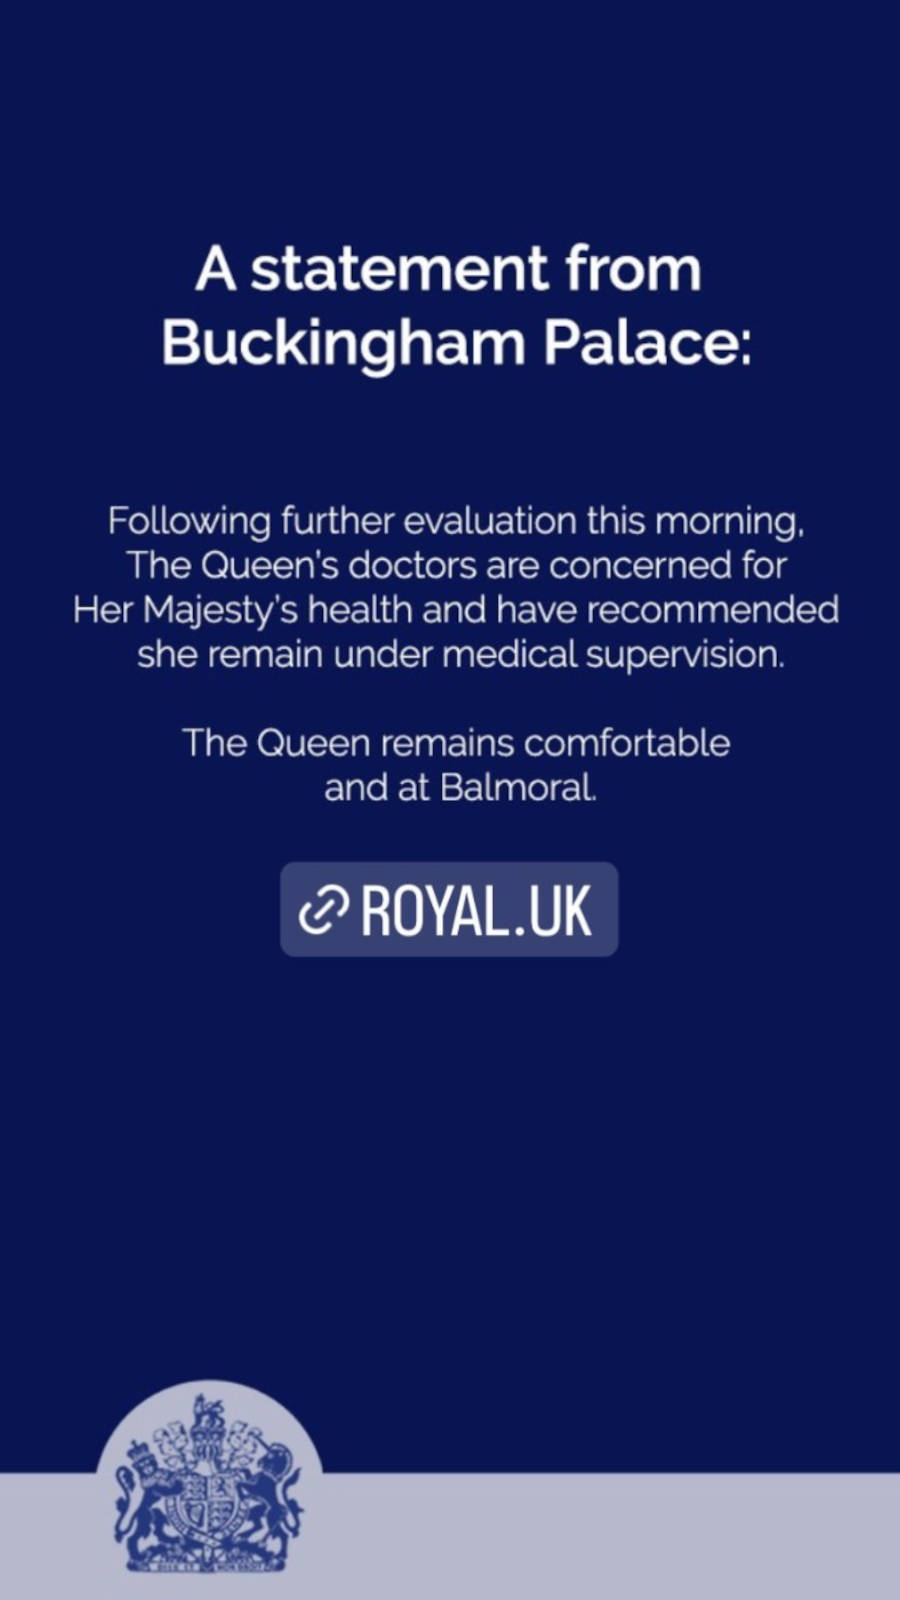 Foto da declaração oficial sobre o estado de saúde da Rainha Elizabeth